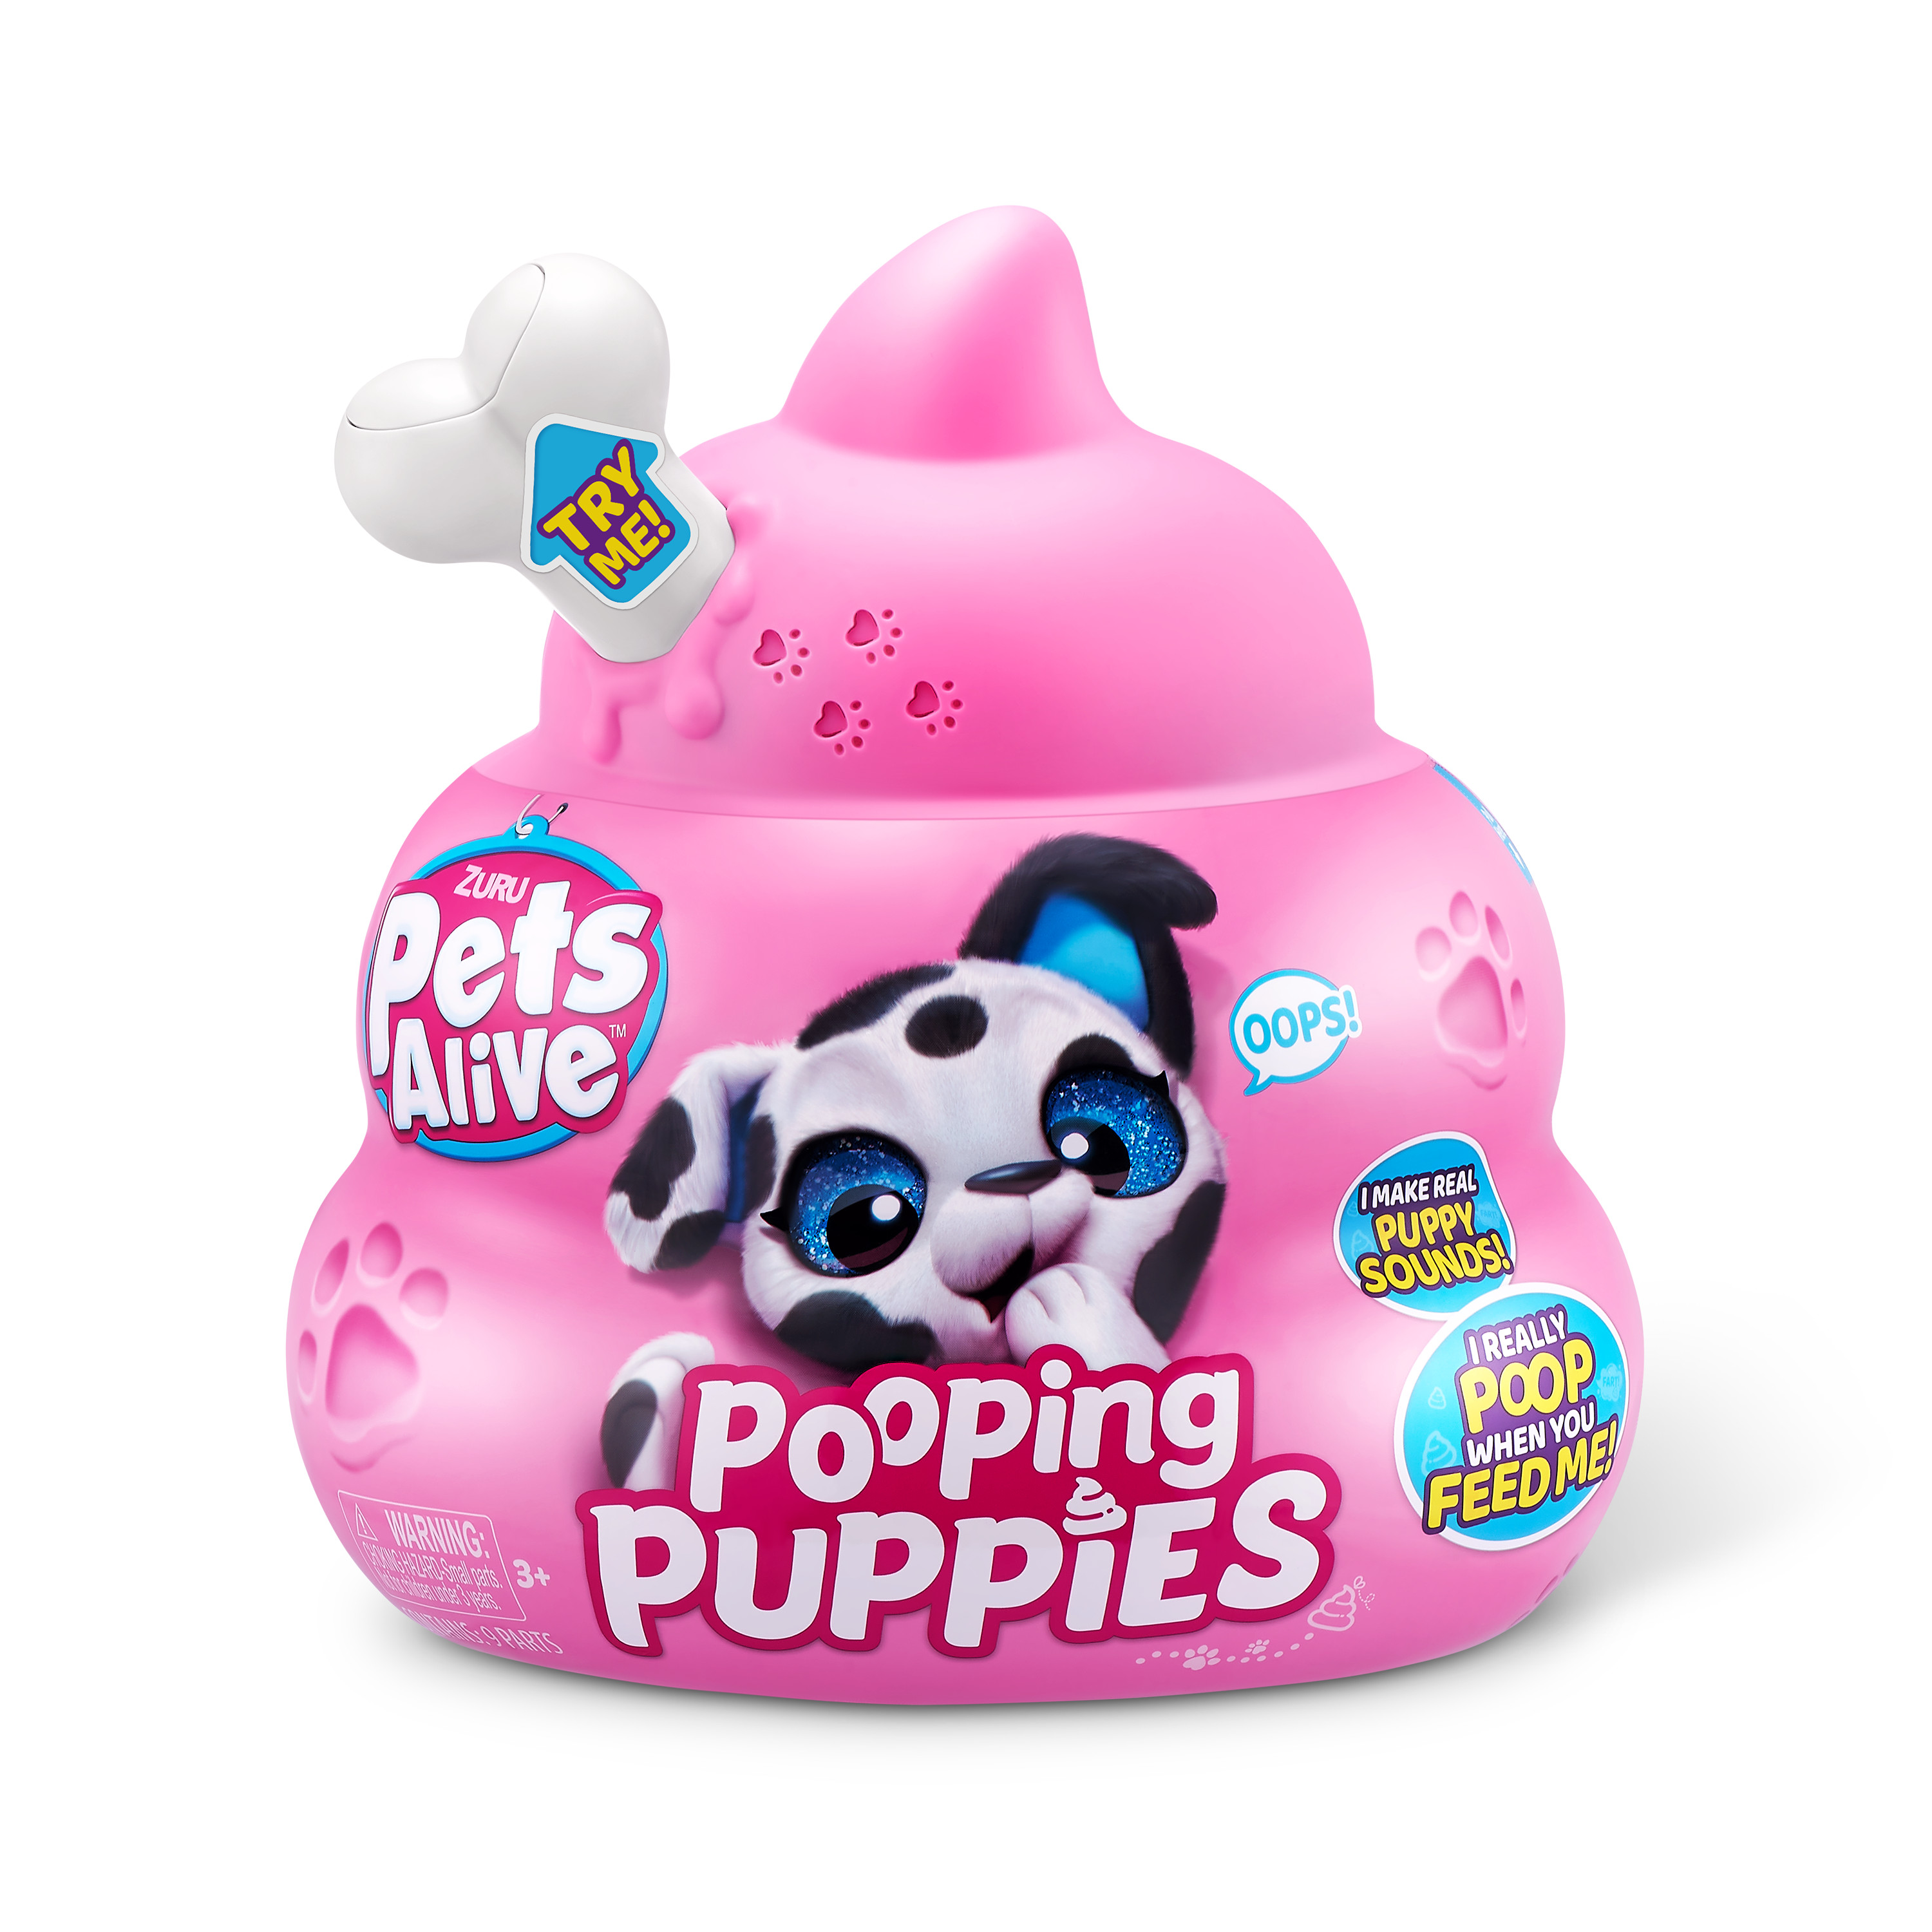 Игрушка Pets Alive Pooping Puppies Капсула в непрозрачной упаковке (Сюрприз) 9542 - фото 11